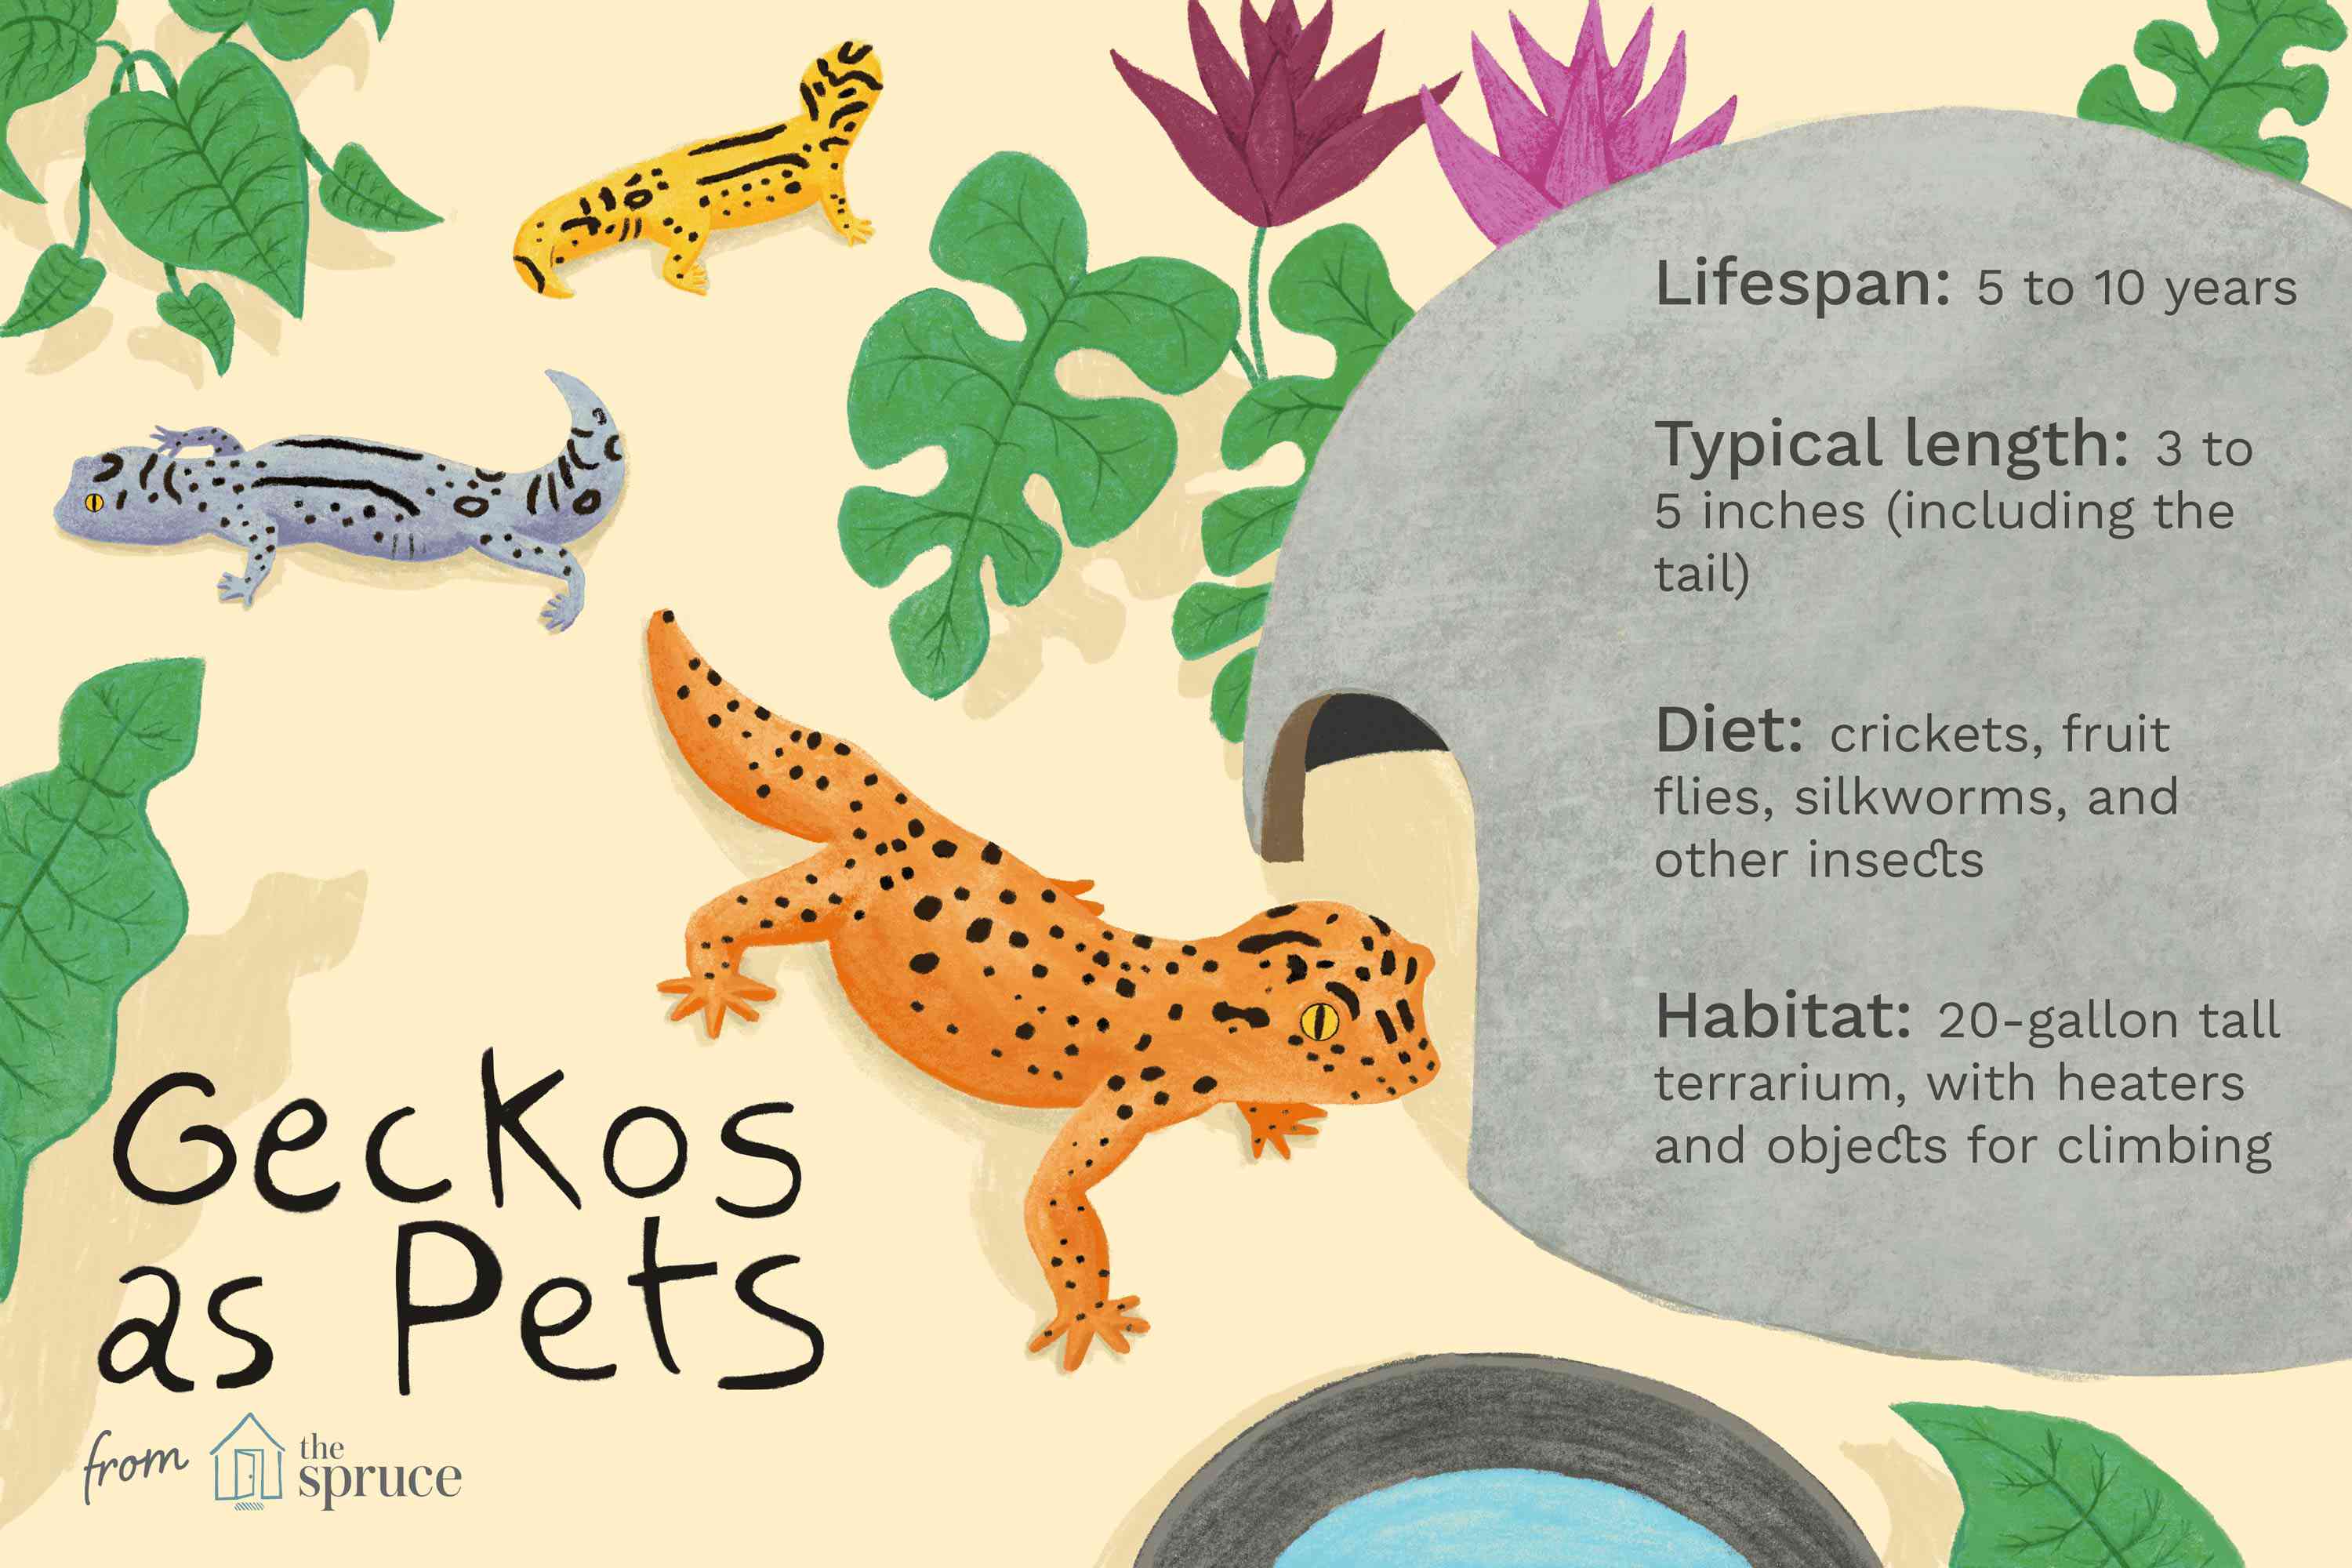 Иллюстрация о гекконах как домашних животных